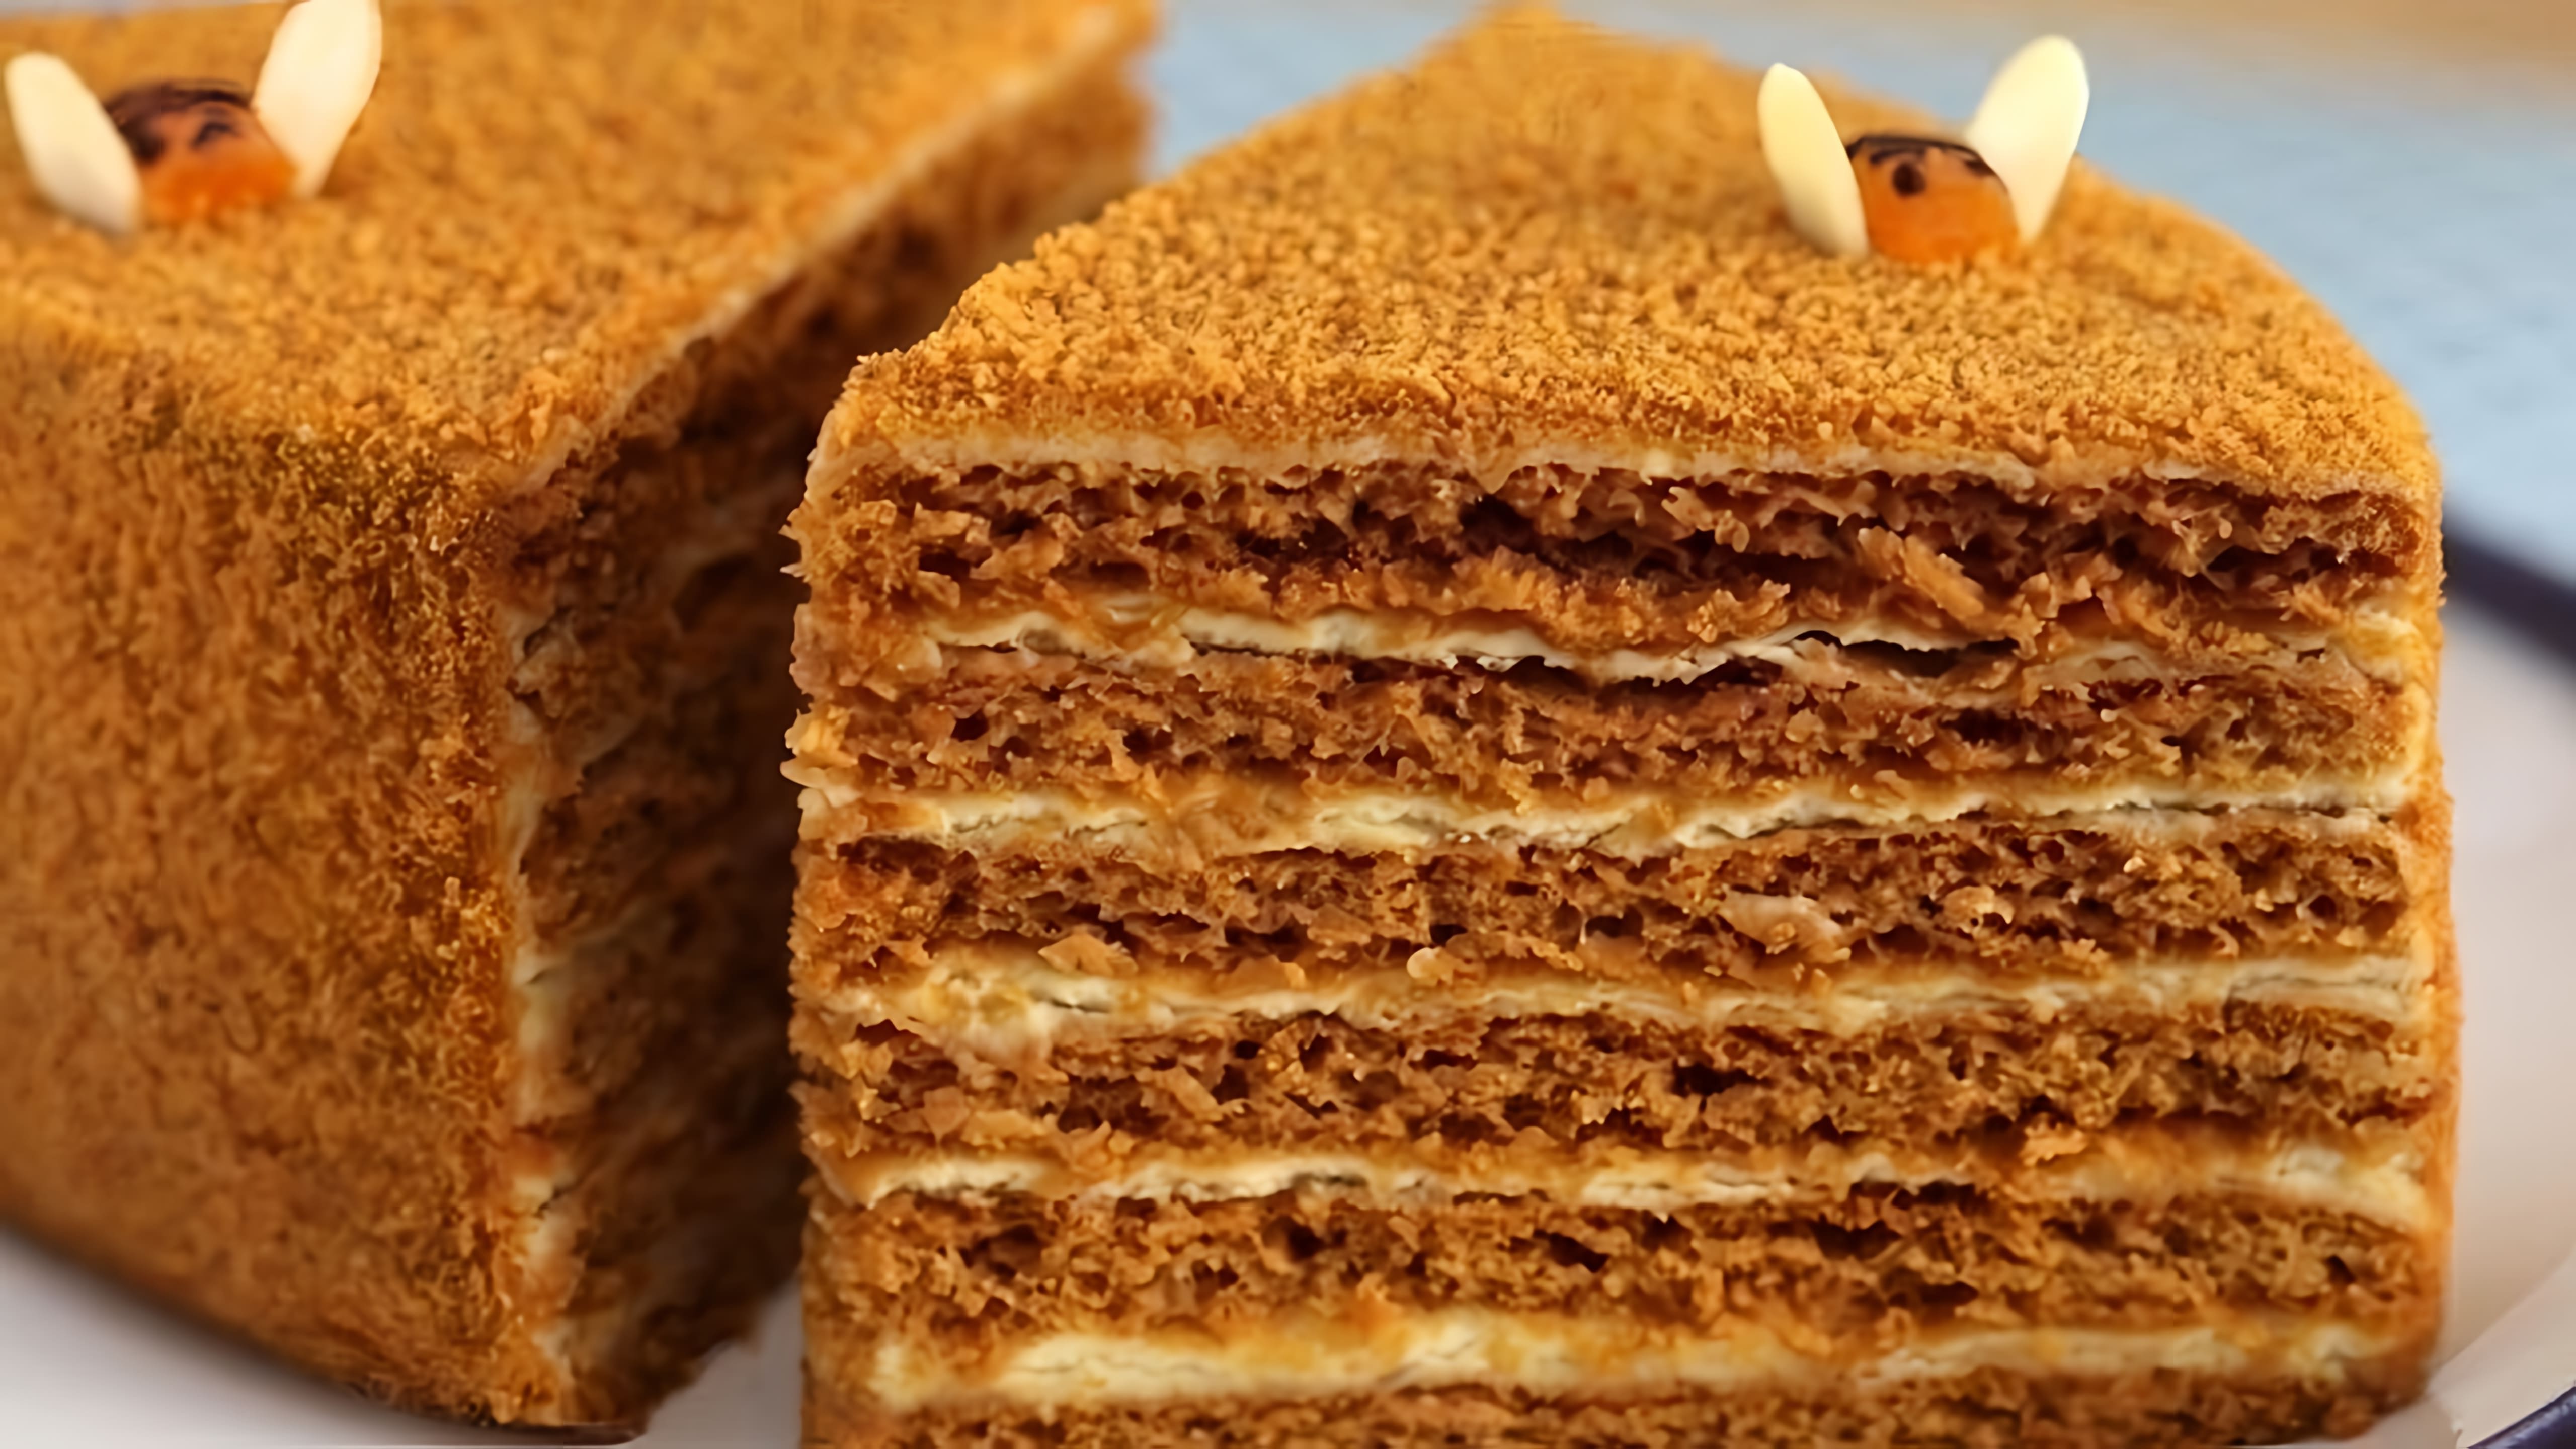 В этом видео демонстрируется процесс приготовления медового торта по оригинальному рецепту